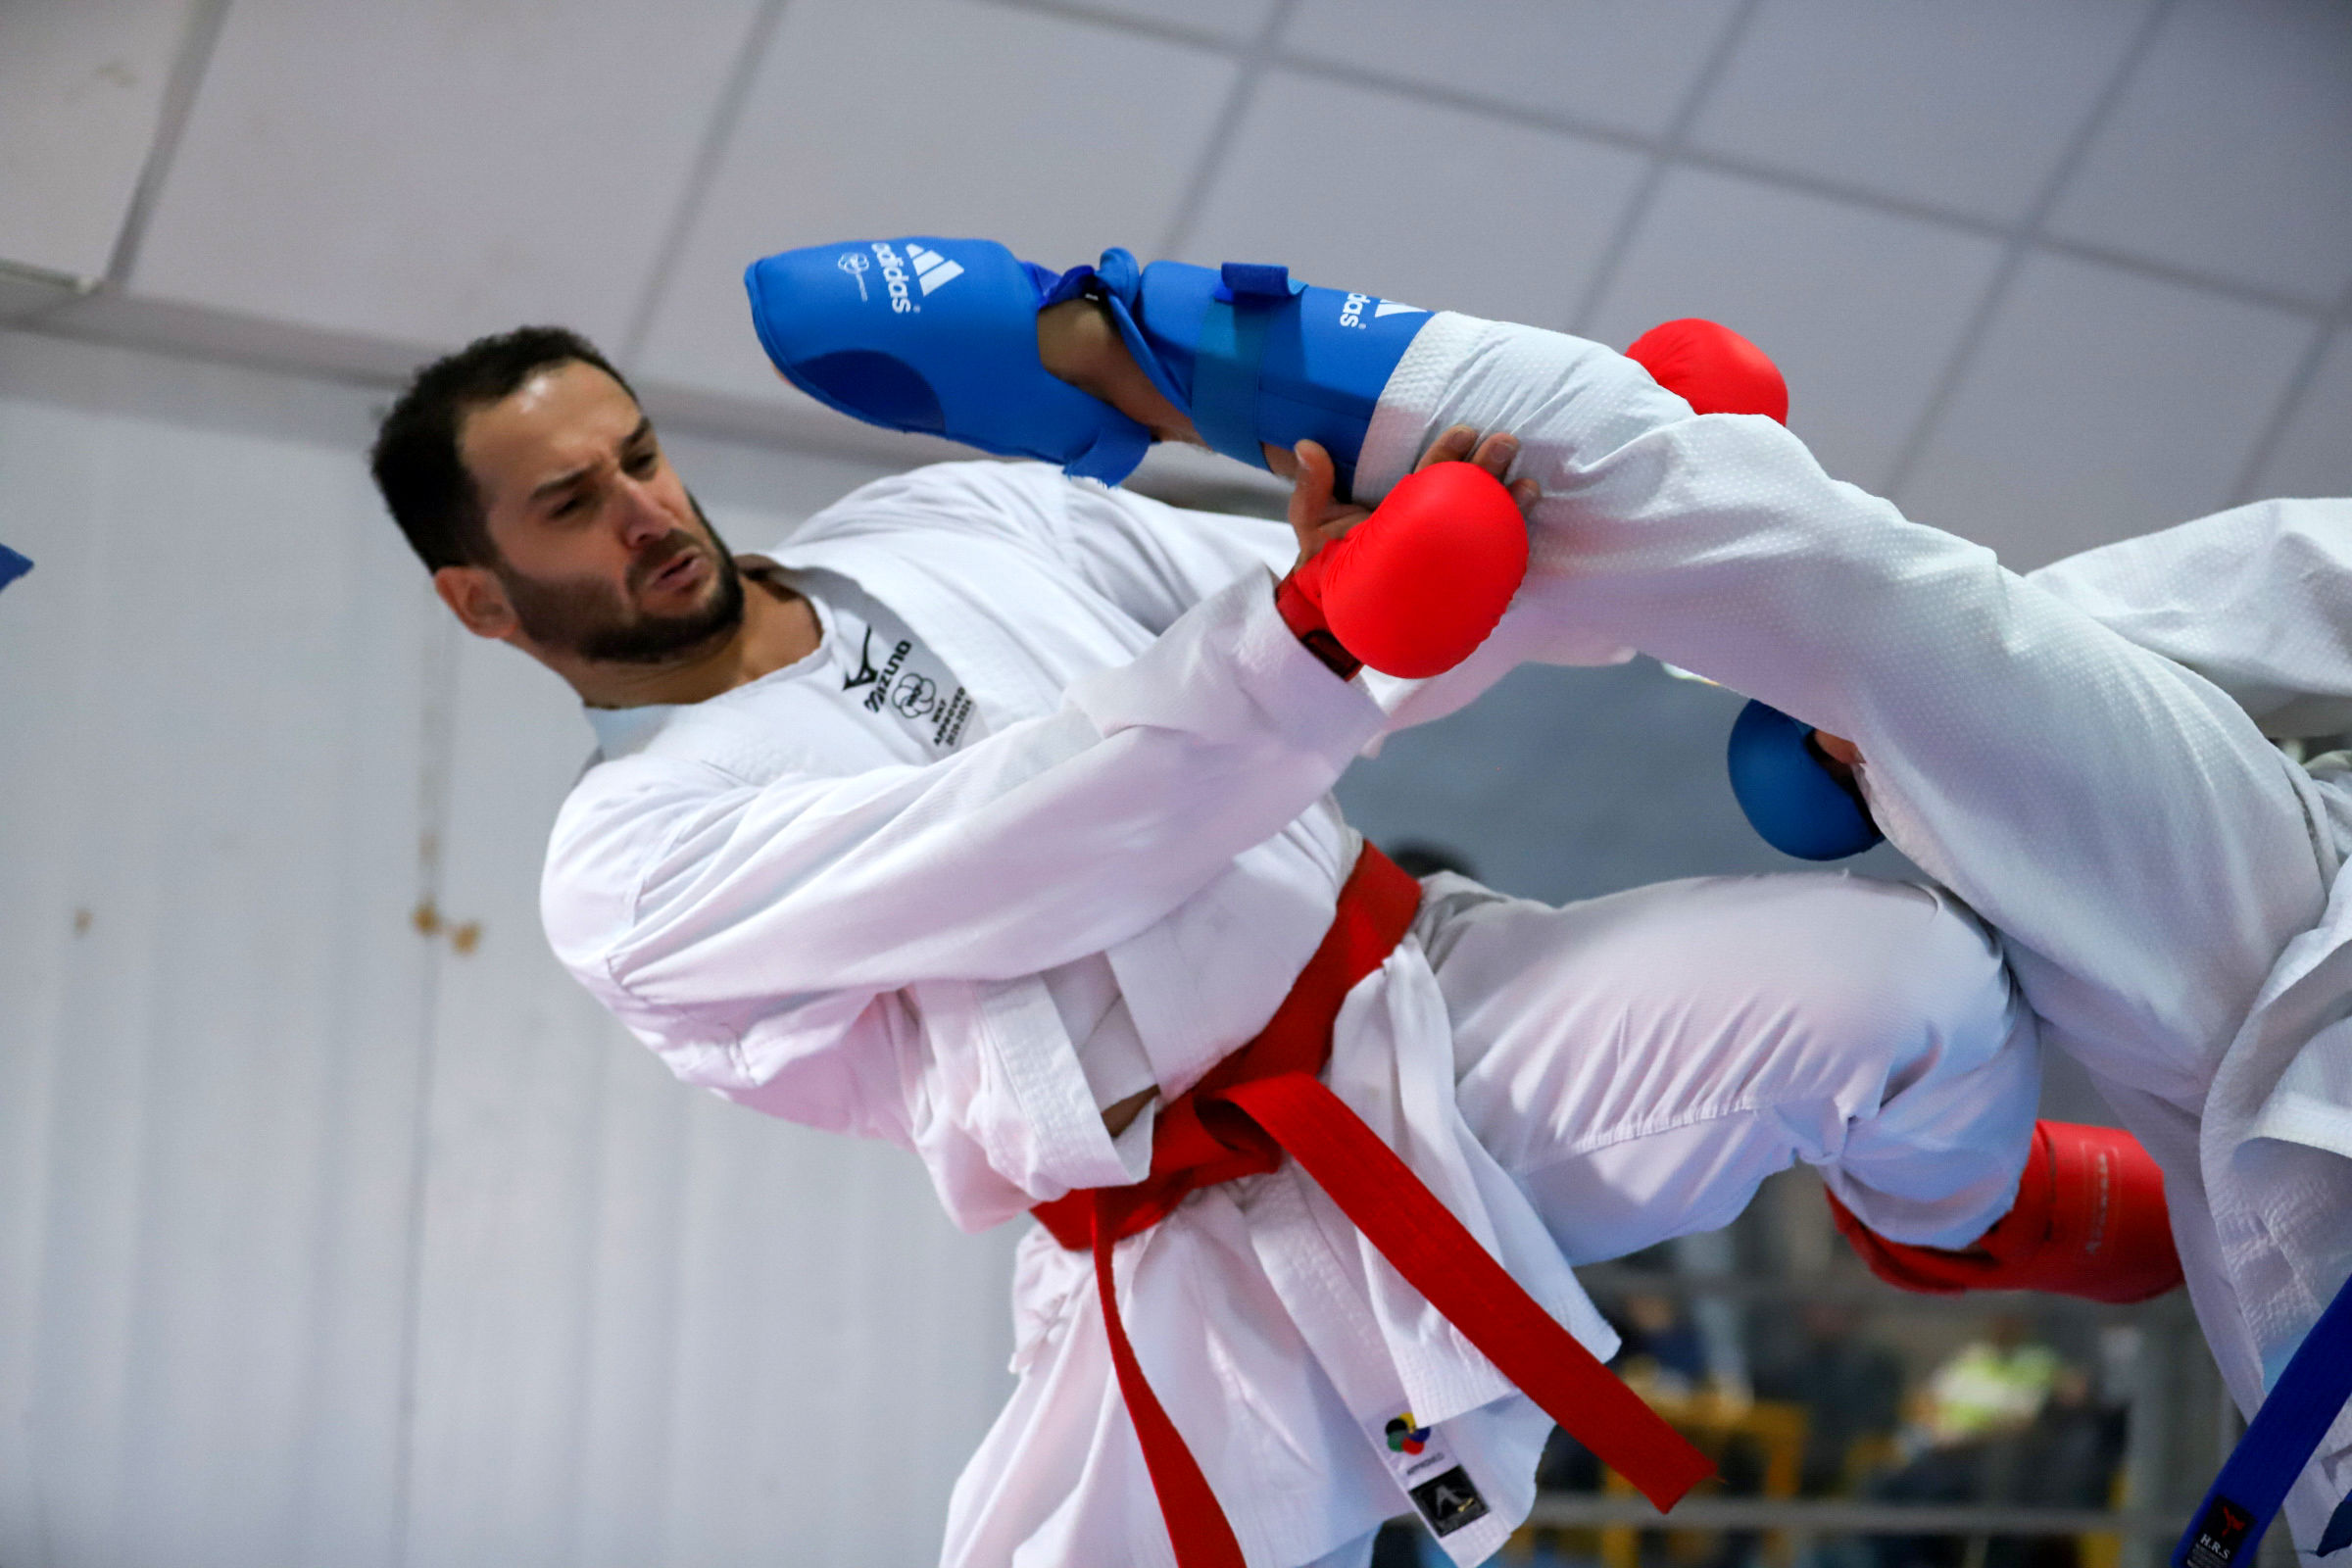 اعلام اسامی نفرات دعوت شده به اردوی تیم ملی کاراته